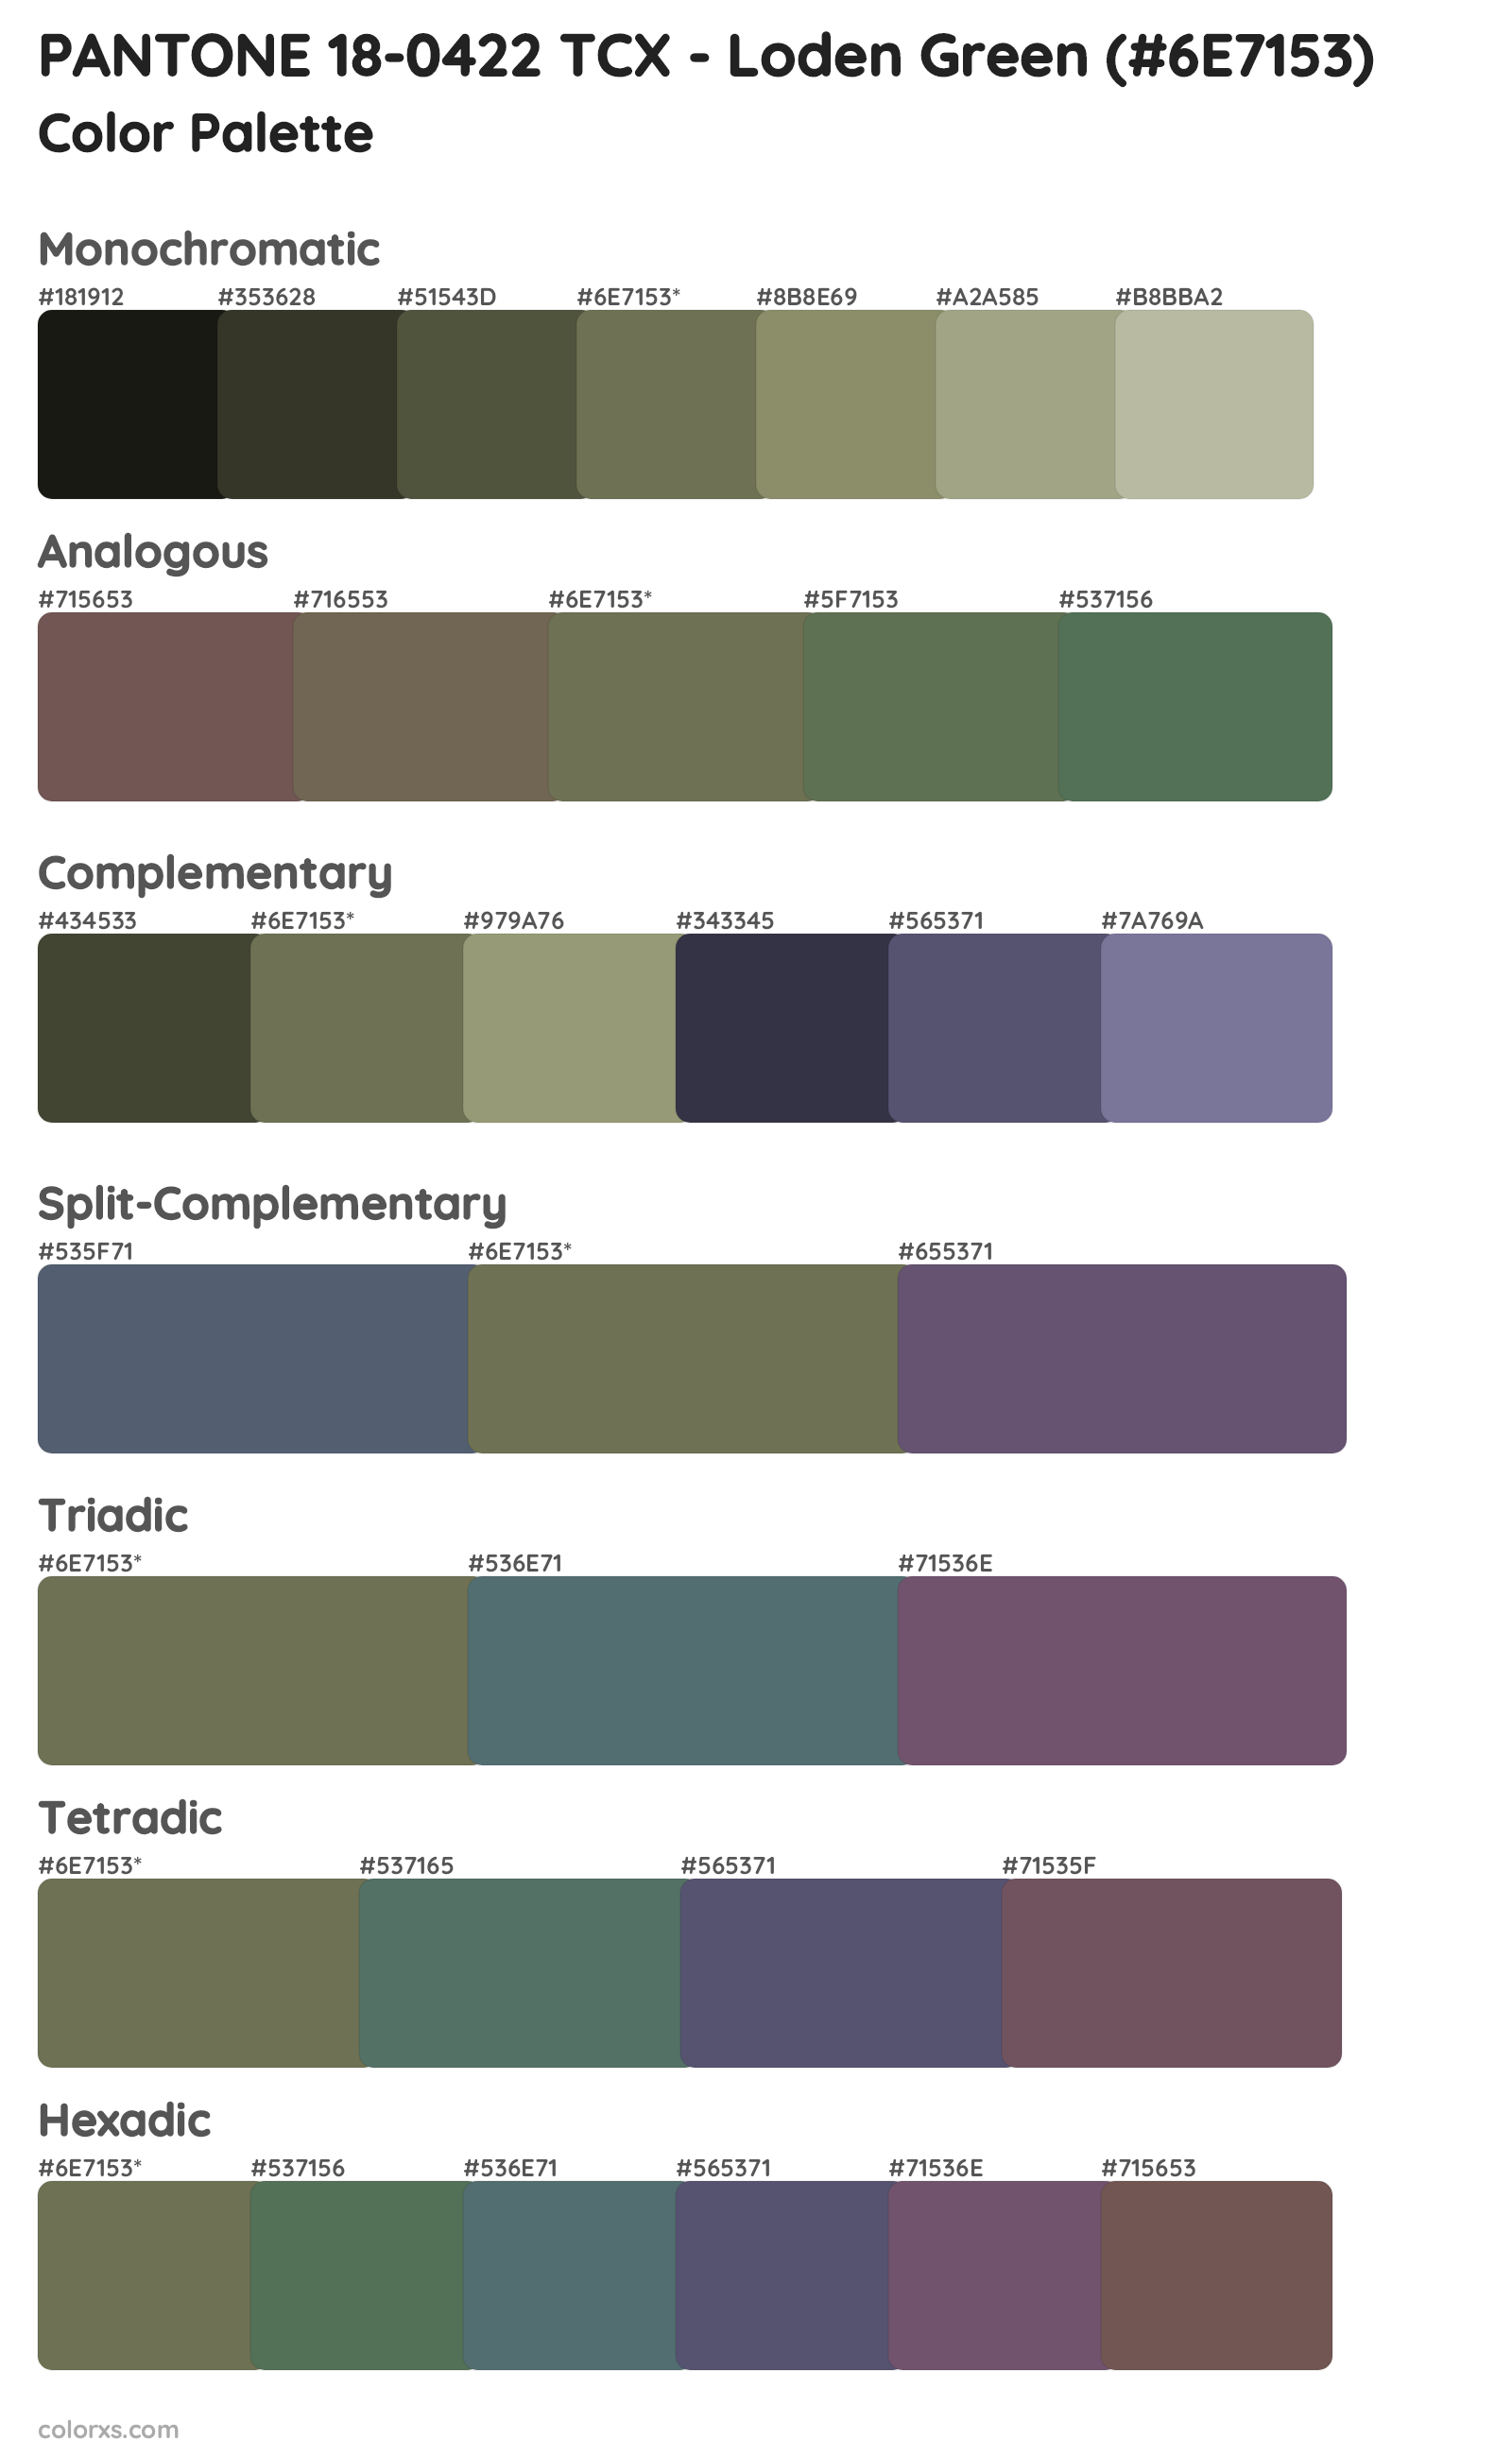 PANTONE 18-0422 TCX - Loden Green Color Scheme Palettes